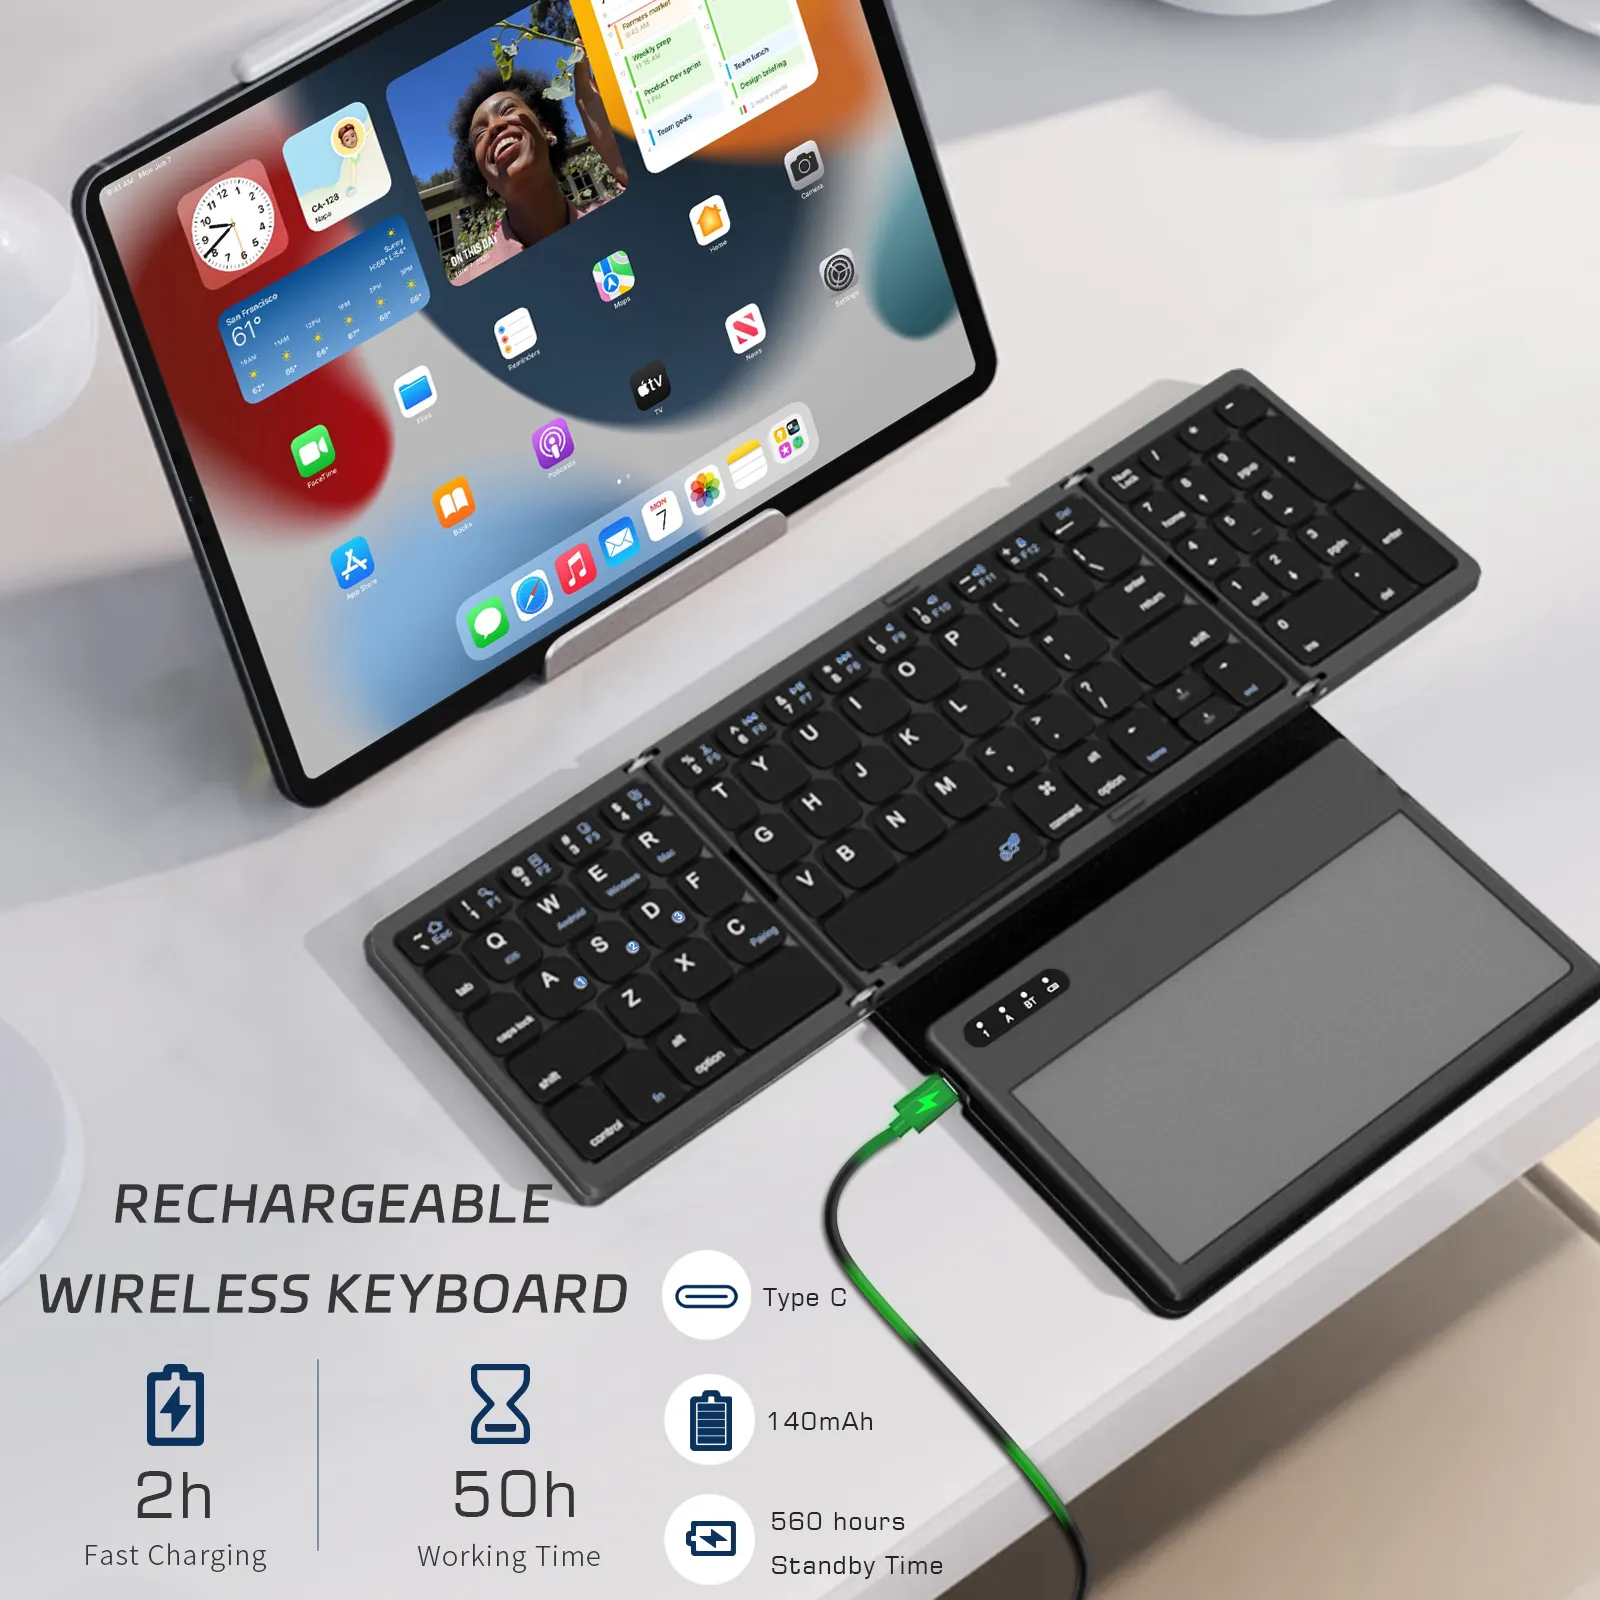 لوحة مفاتيح قابلة للطي مزودة بتقنية Bluetooth مع لوحة لمس كبيرة مناسبة للسفر لوحة مفاتيح مناسبة للكمبيوتر المحمول Mac والهواتف التي تعمل بنظام Windows iOS والأندرويد